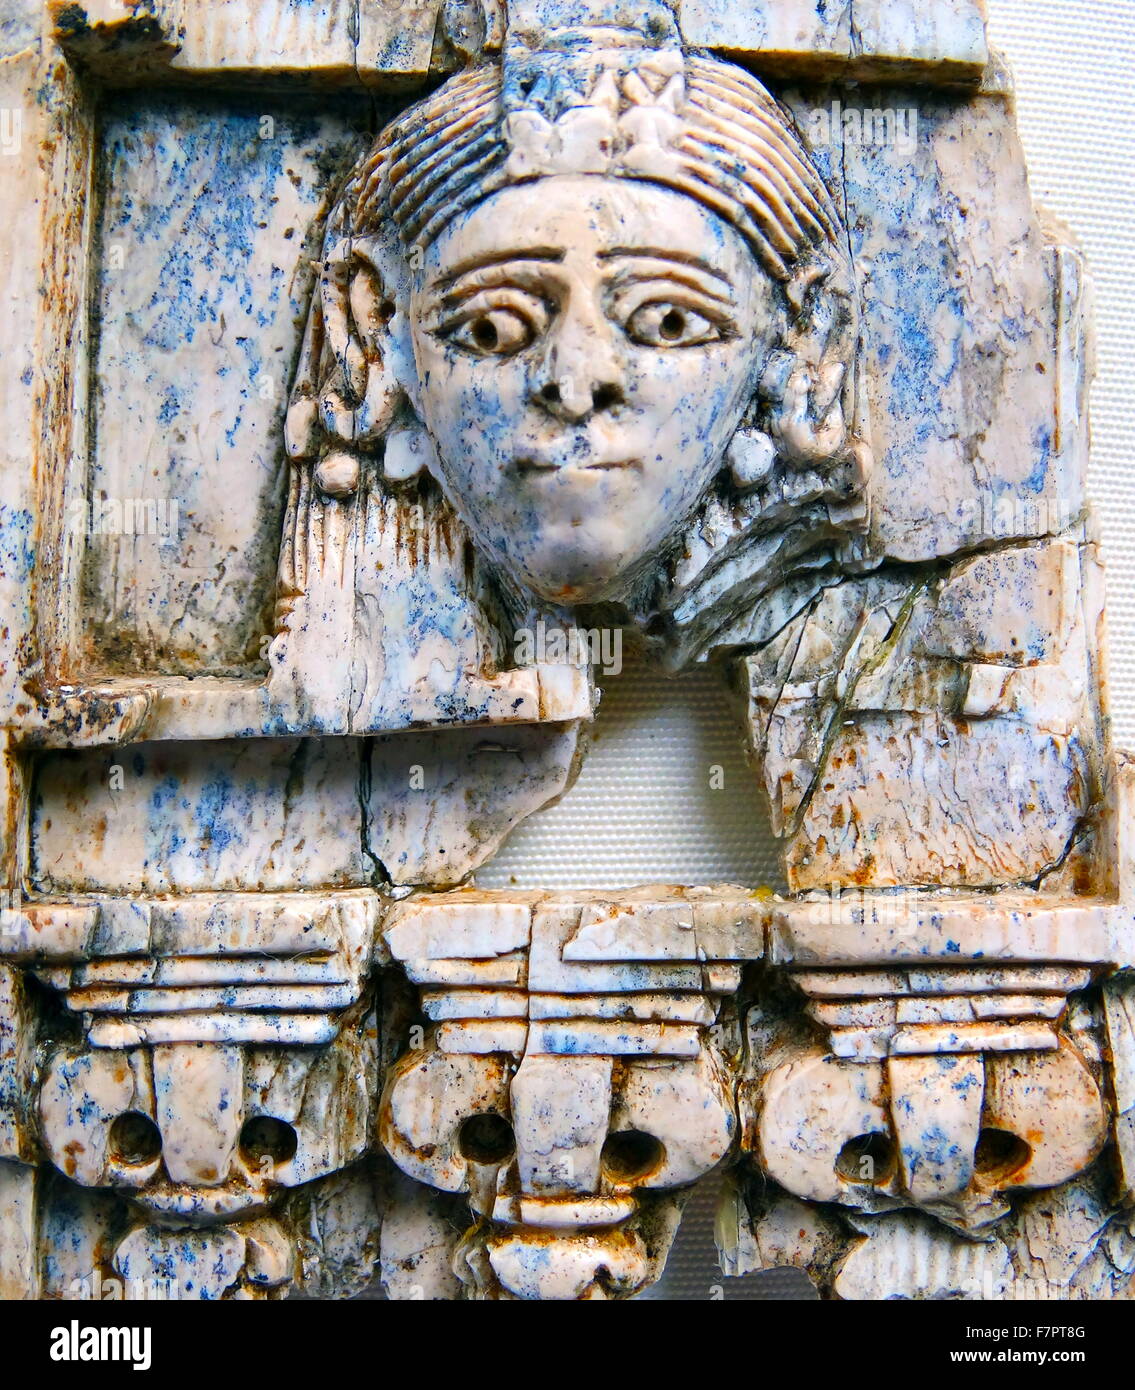 Motif que representan "La dama en la ventana' en marfil de Nimrud Foto de stock